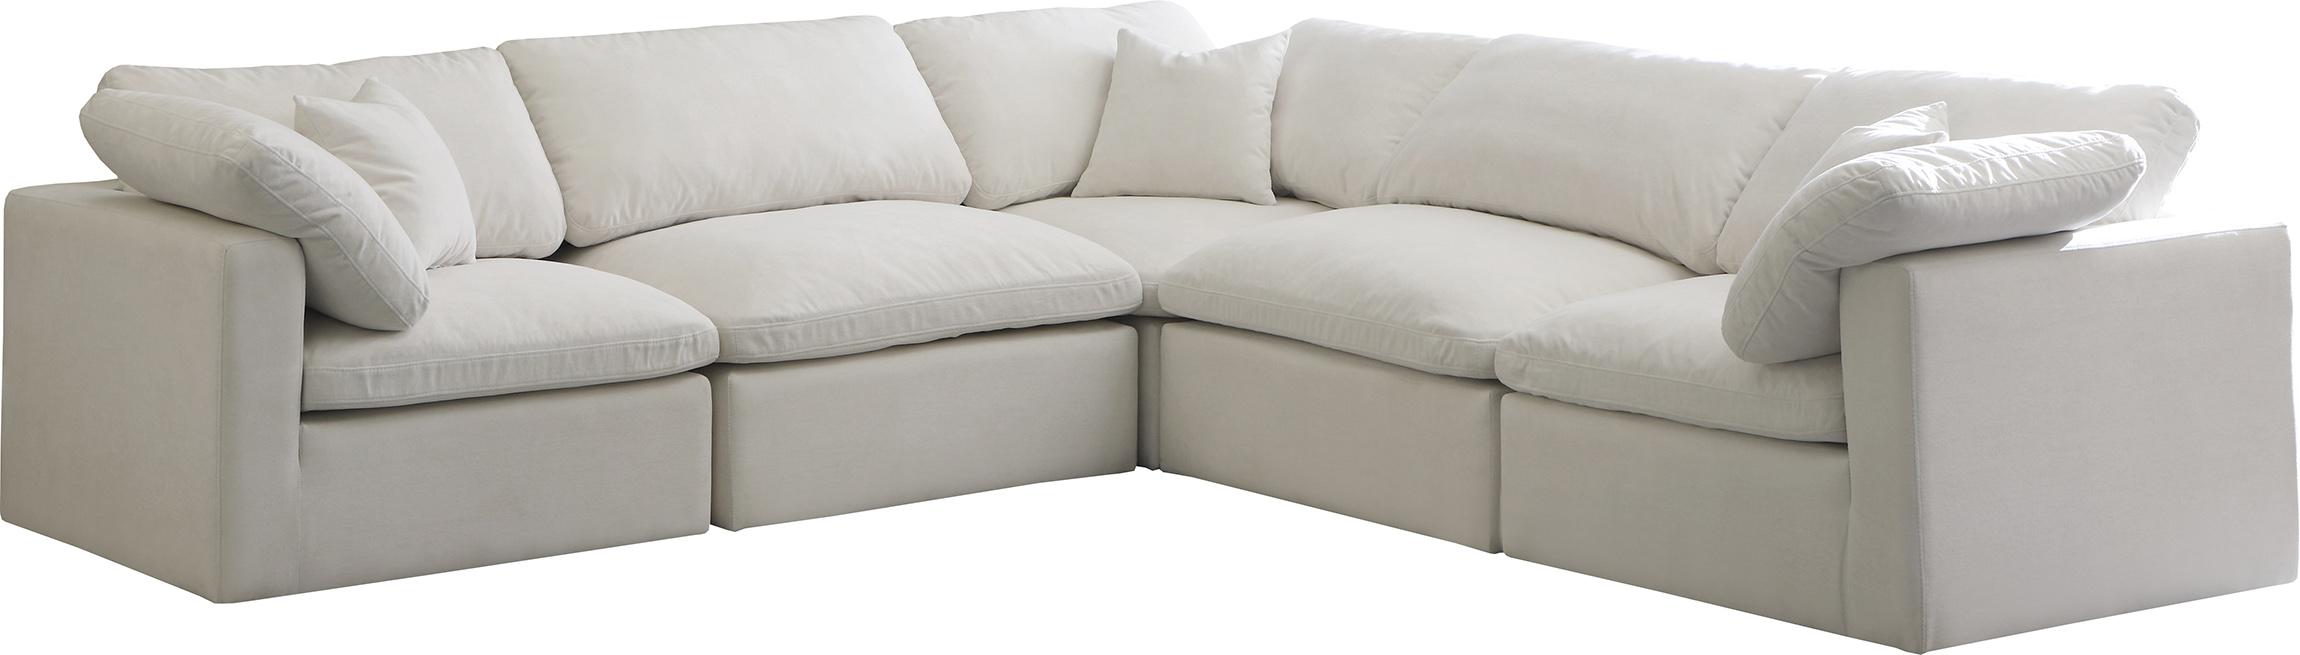 Contemporary, Modern Modular Sectional Sofa 602Cream-Sec5C 602Cream-Sec5C in Cream Fabric